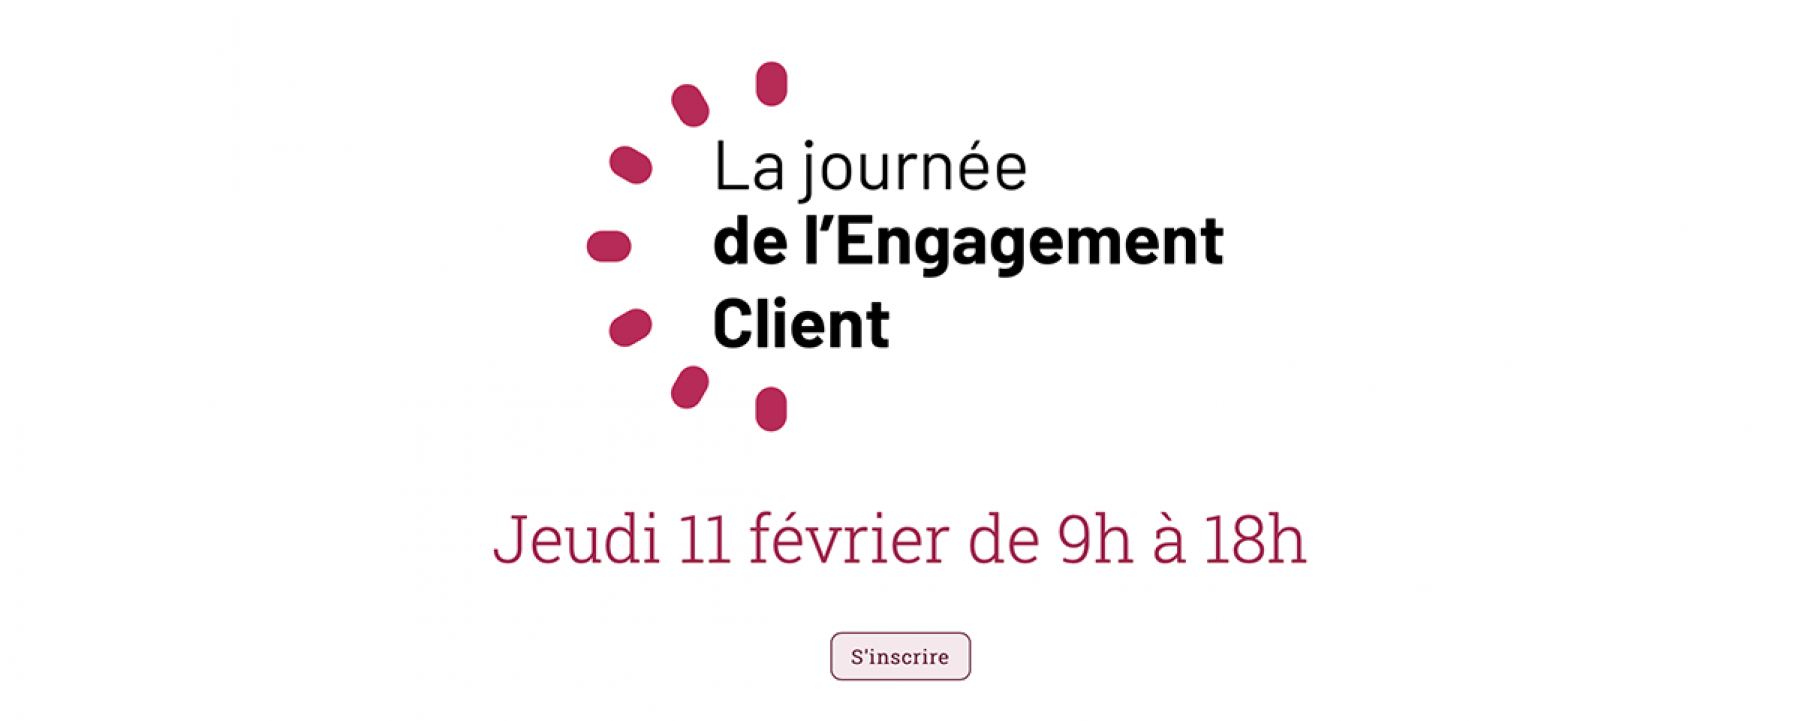 La journée de l'Engagement Client, un événement organisé par NetMedia Group le 11 février